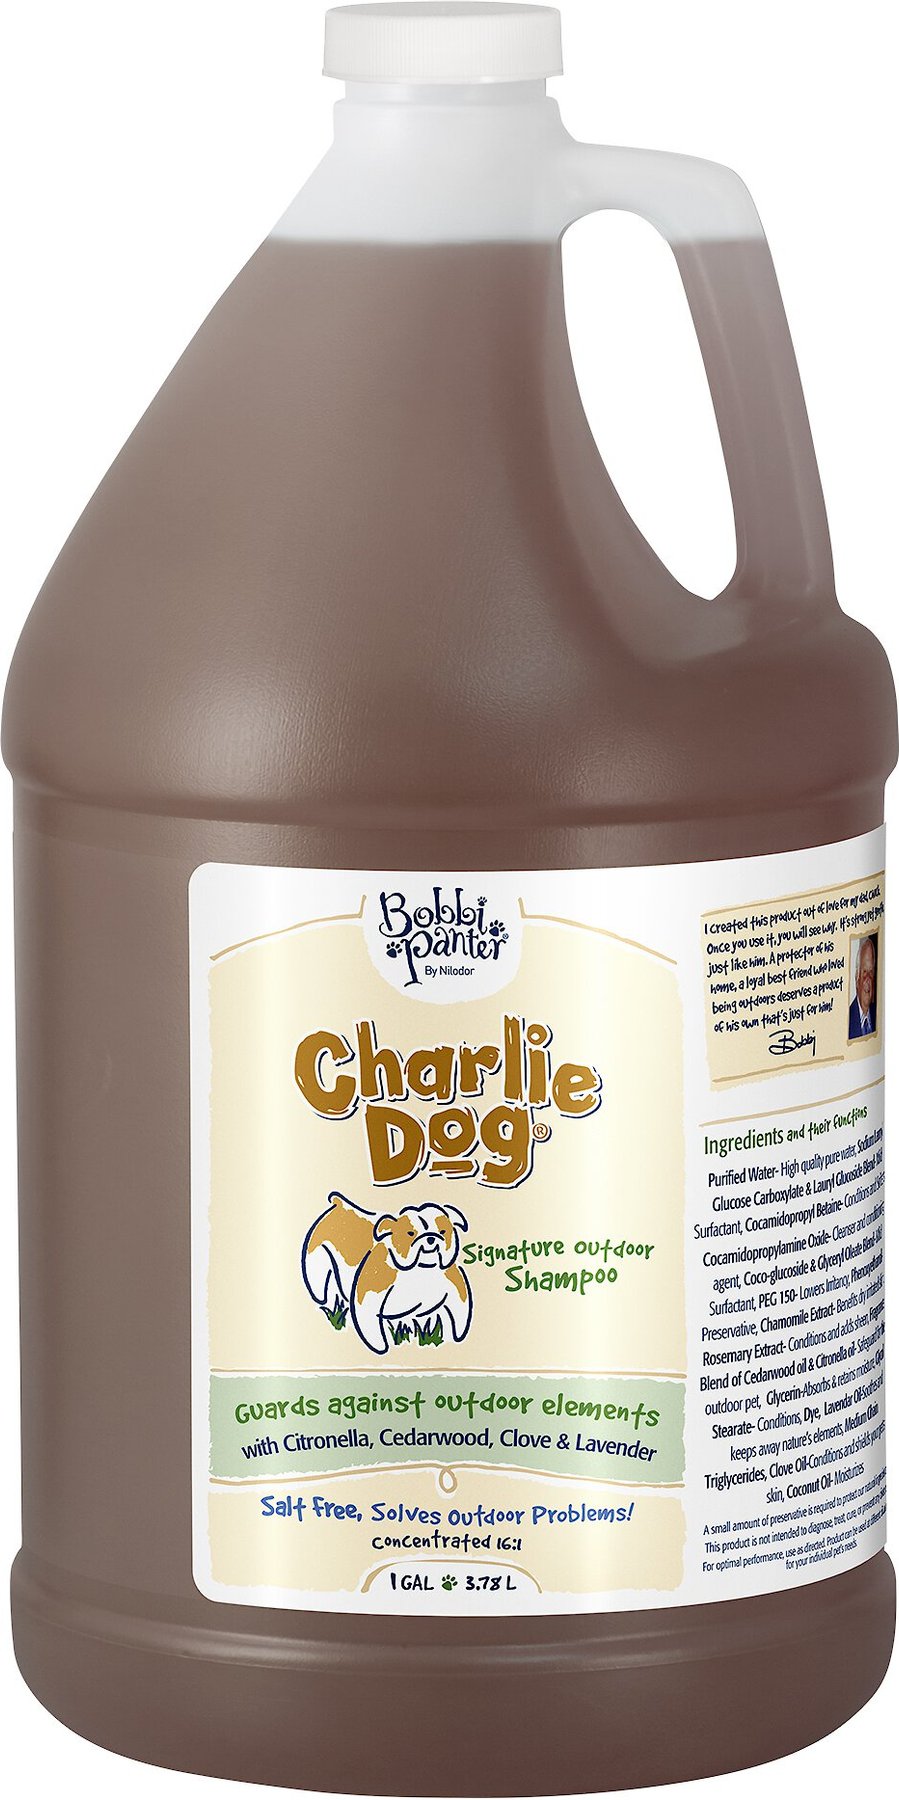 BOBBI Charlie Dog Signature Outdoor Dog 1-gal - Chewy.com